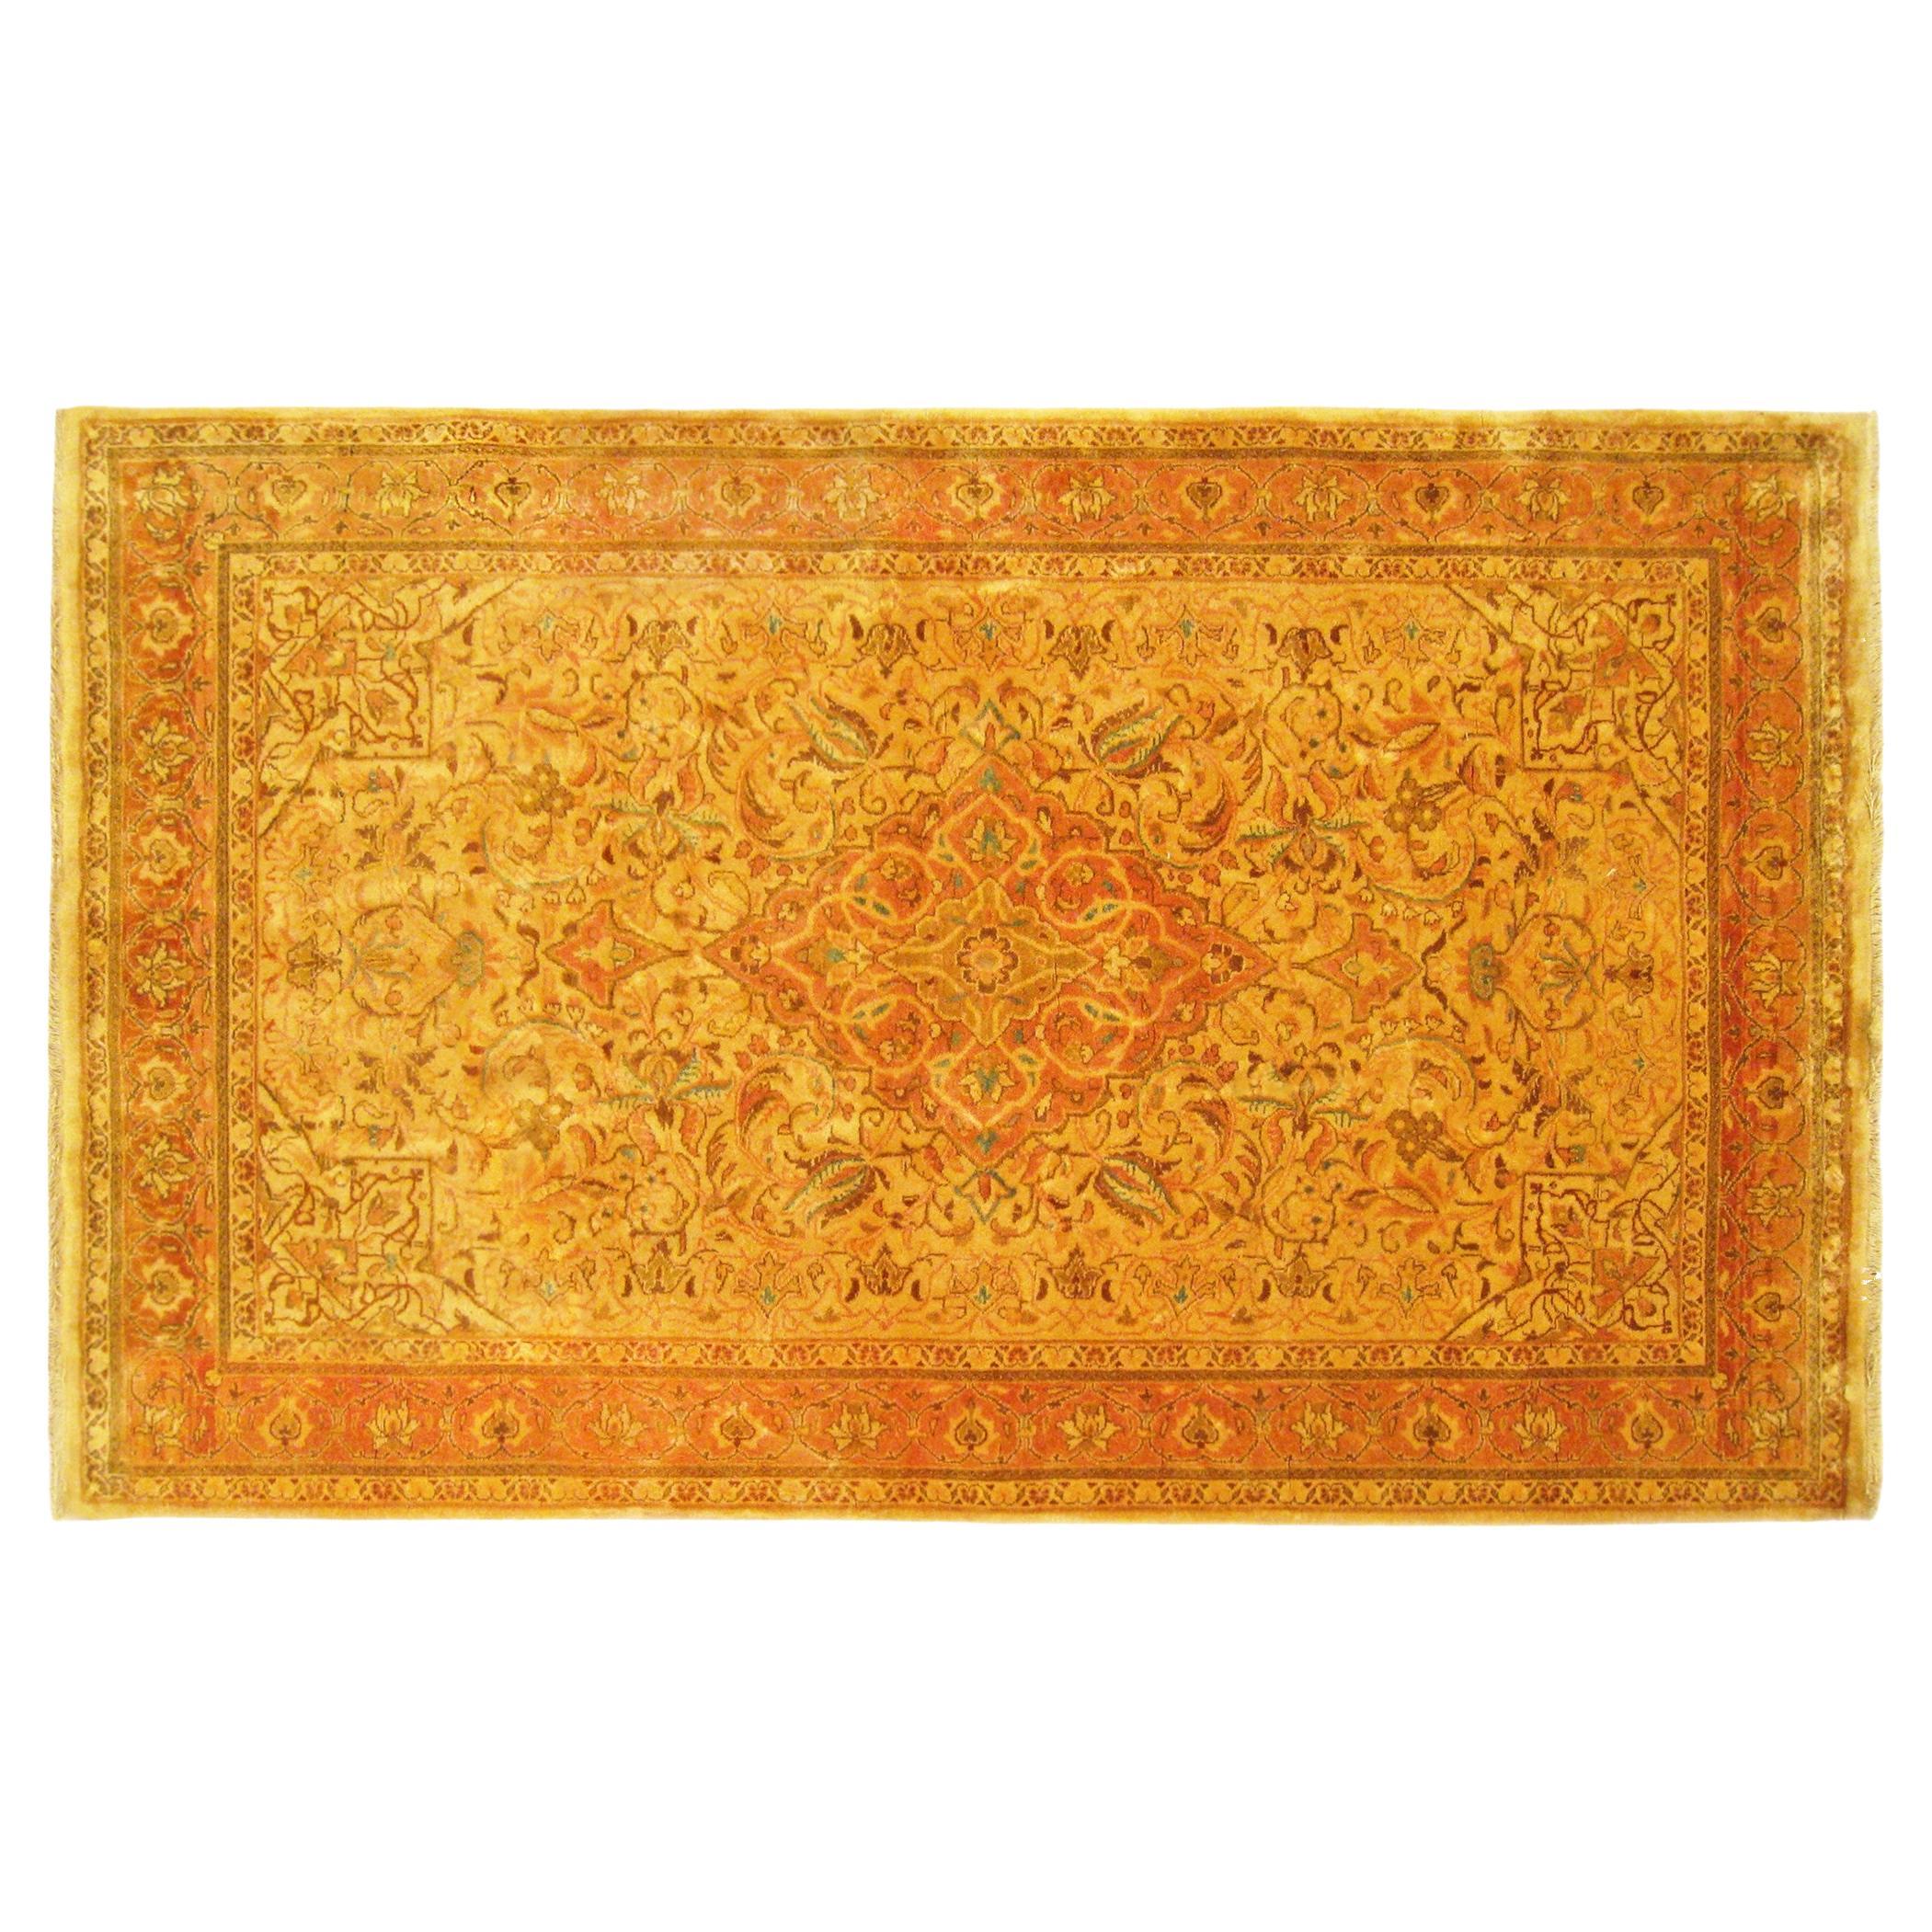 Persischer Sarouk-Teppich im Vintage-Stil, in kleiner Größe, mit zentralem Medaillon